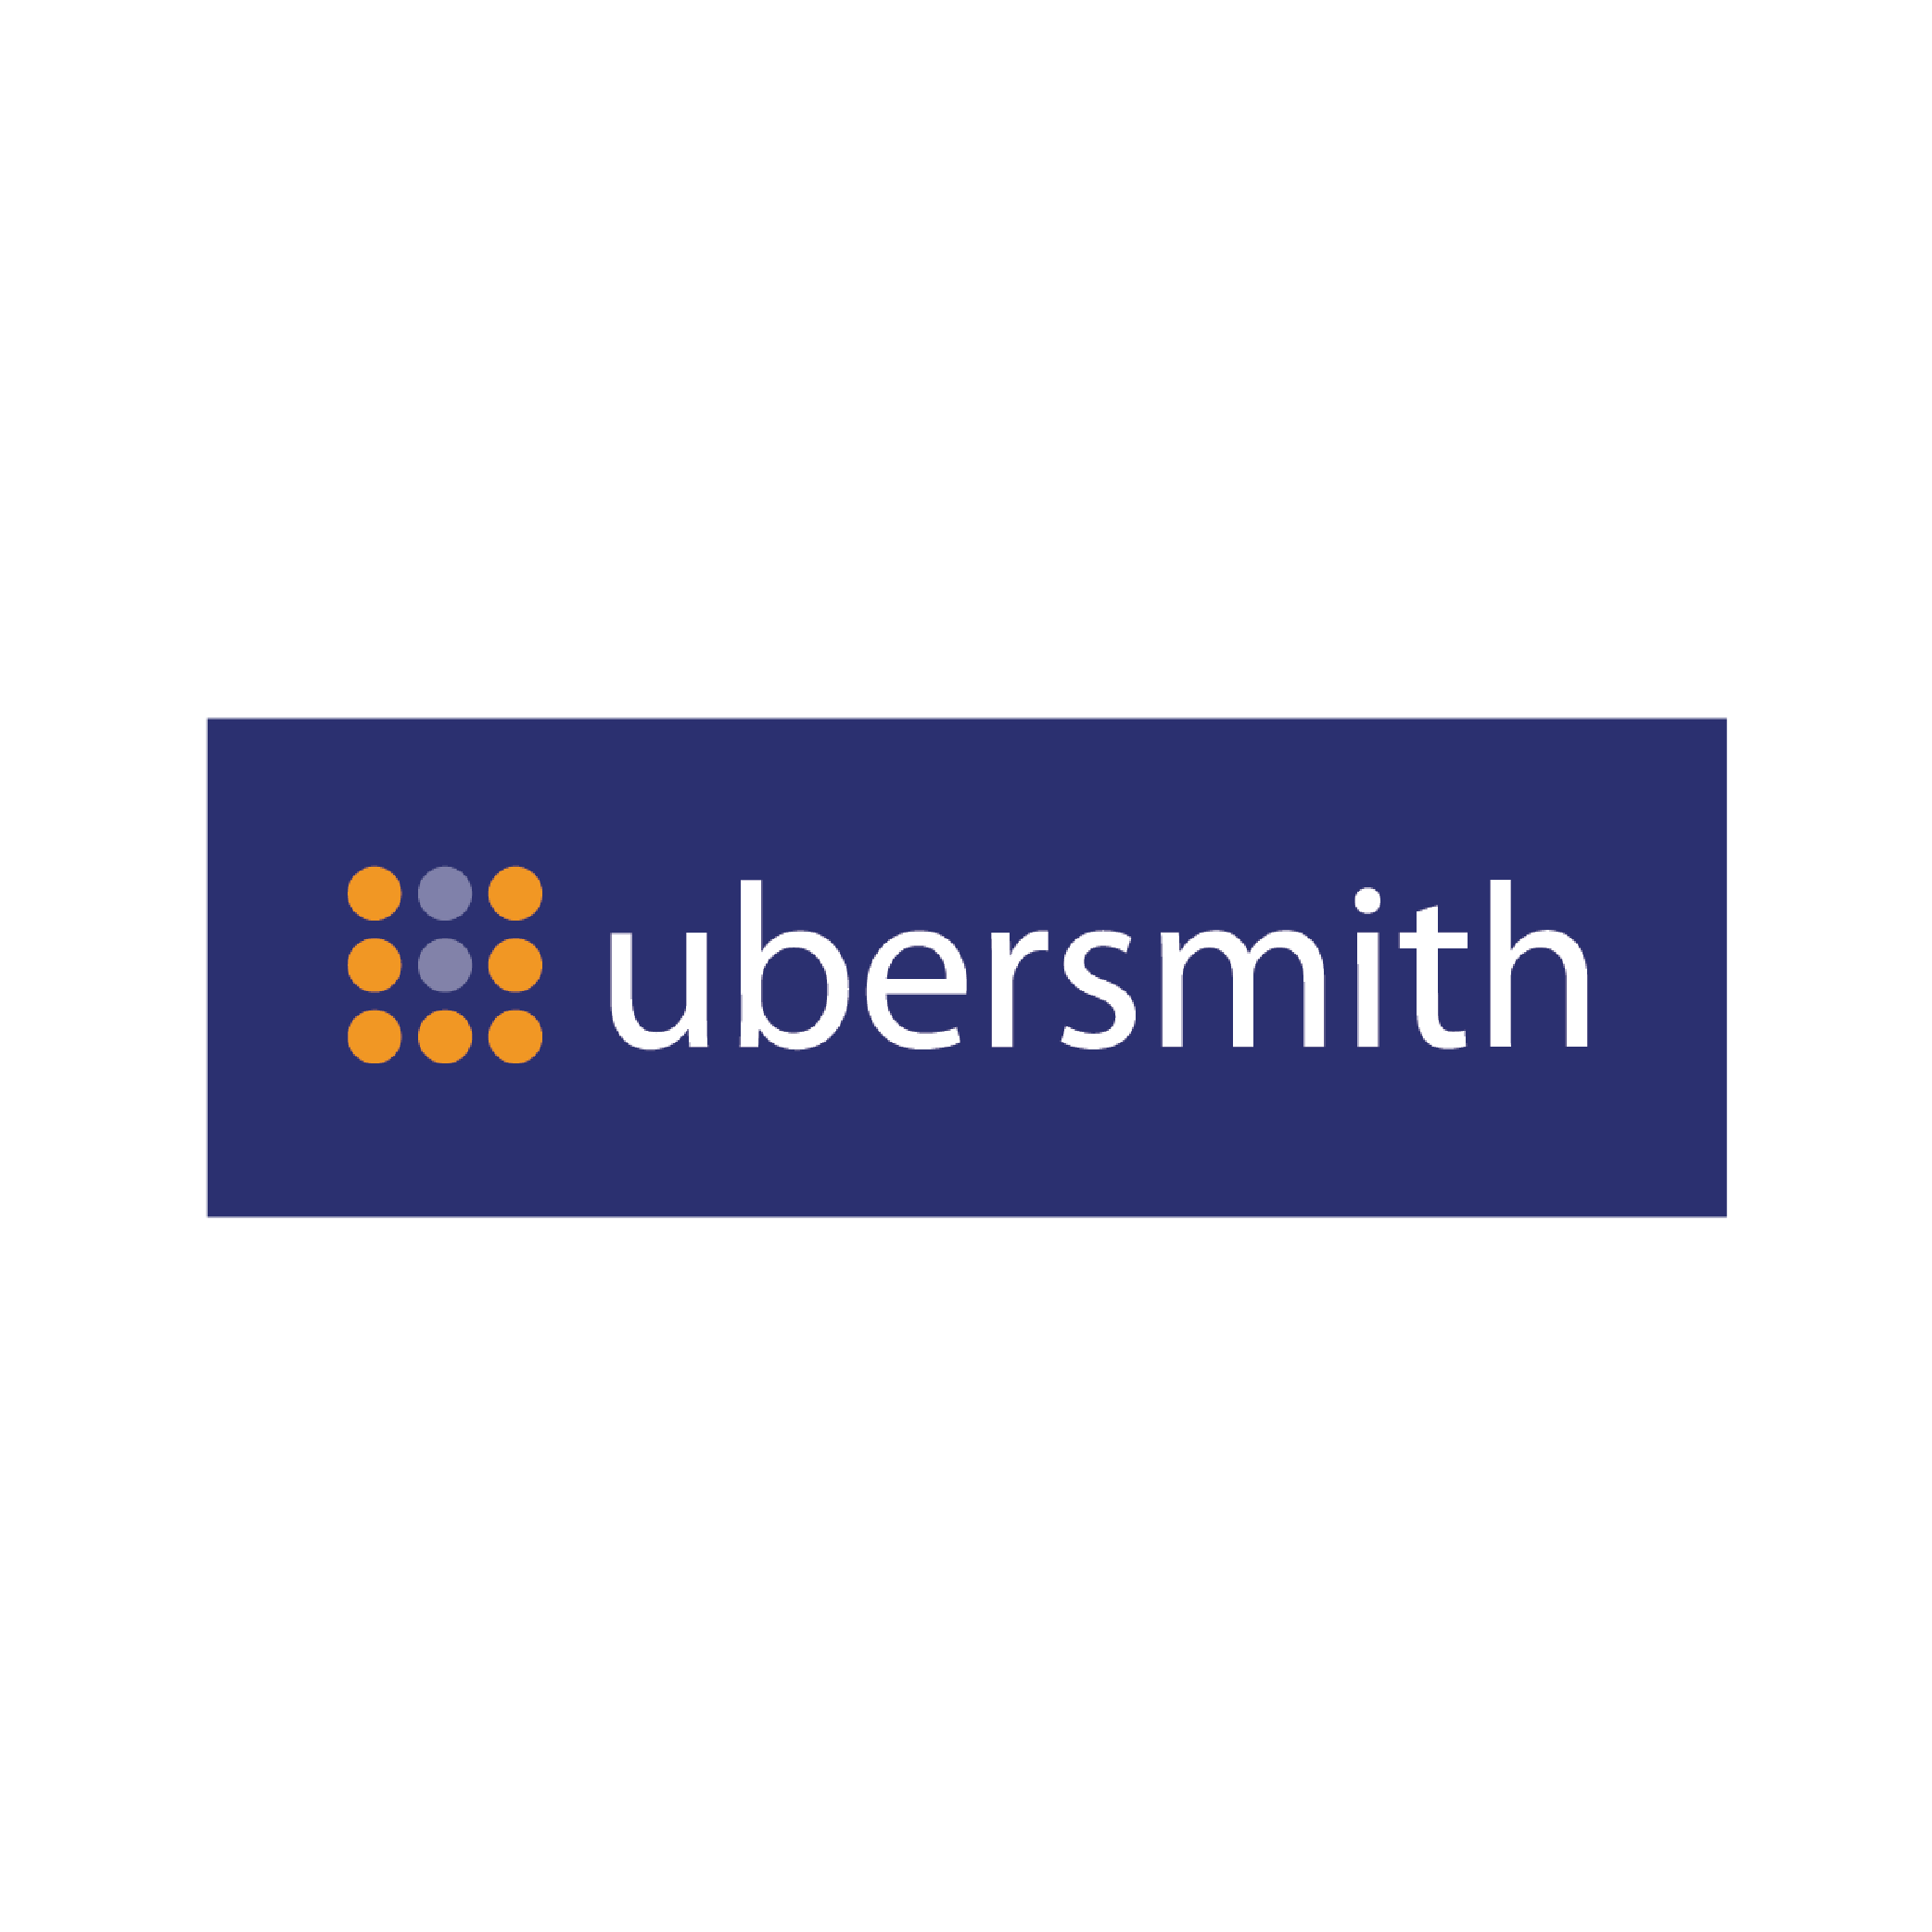 ubersmith-logo-33.png